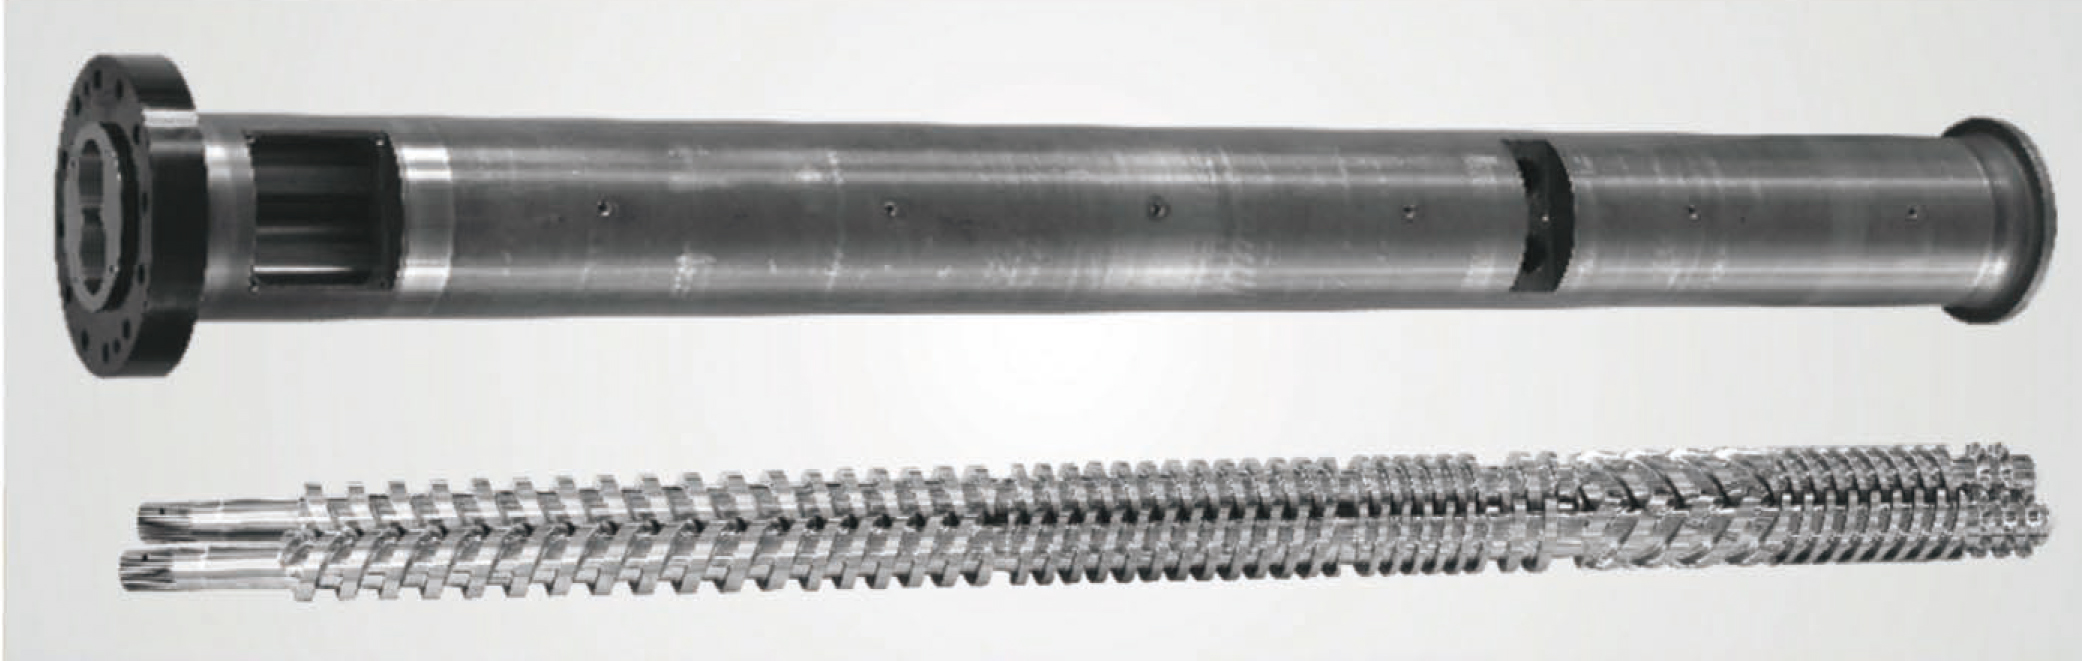 Paralleler Doppelschneckenzylinder für PVC-Rohre und -Profile